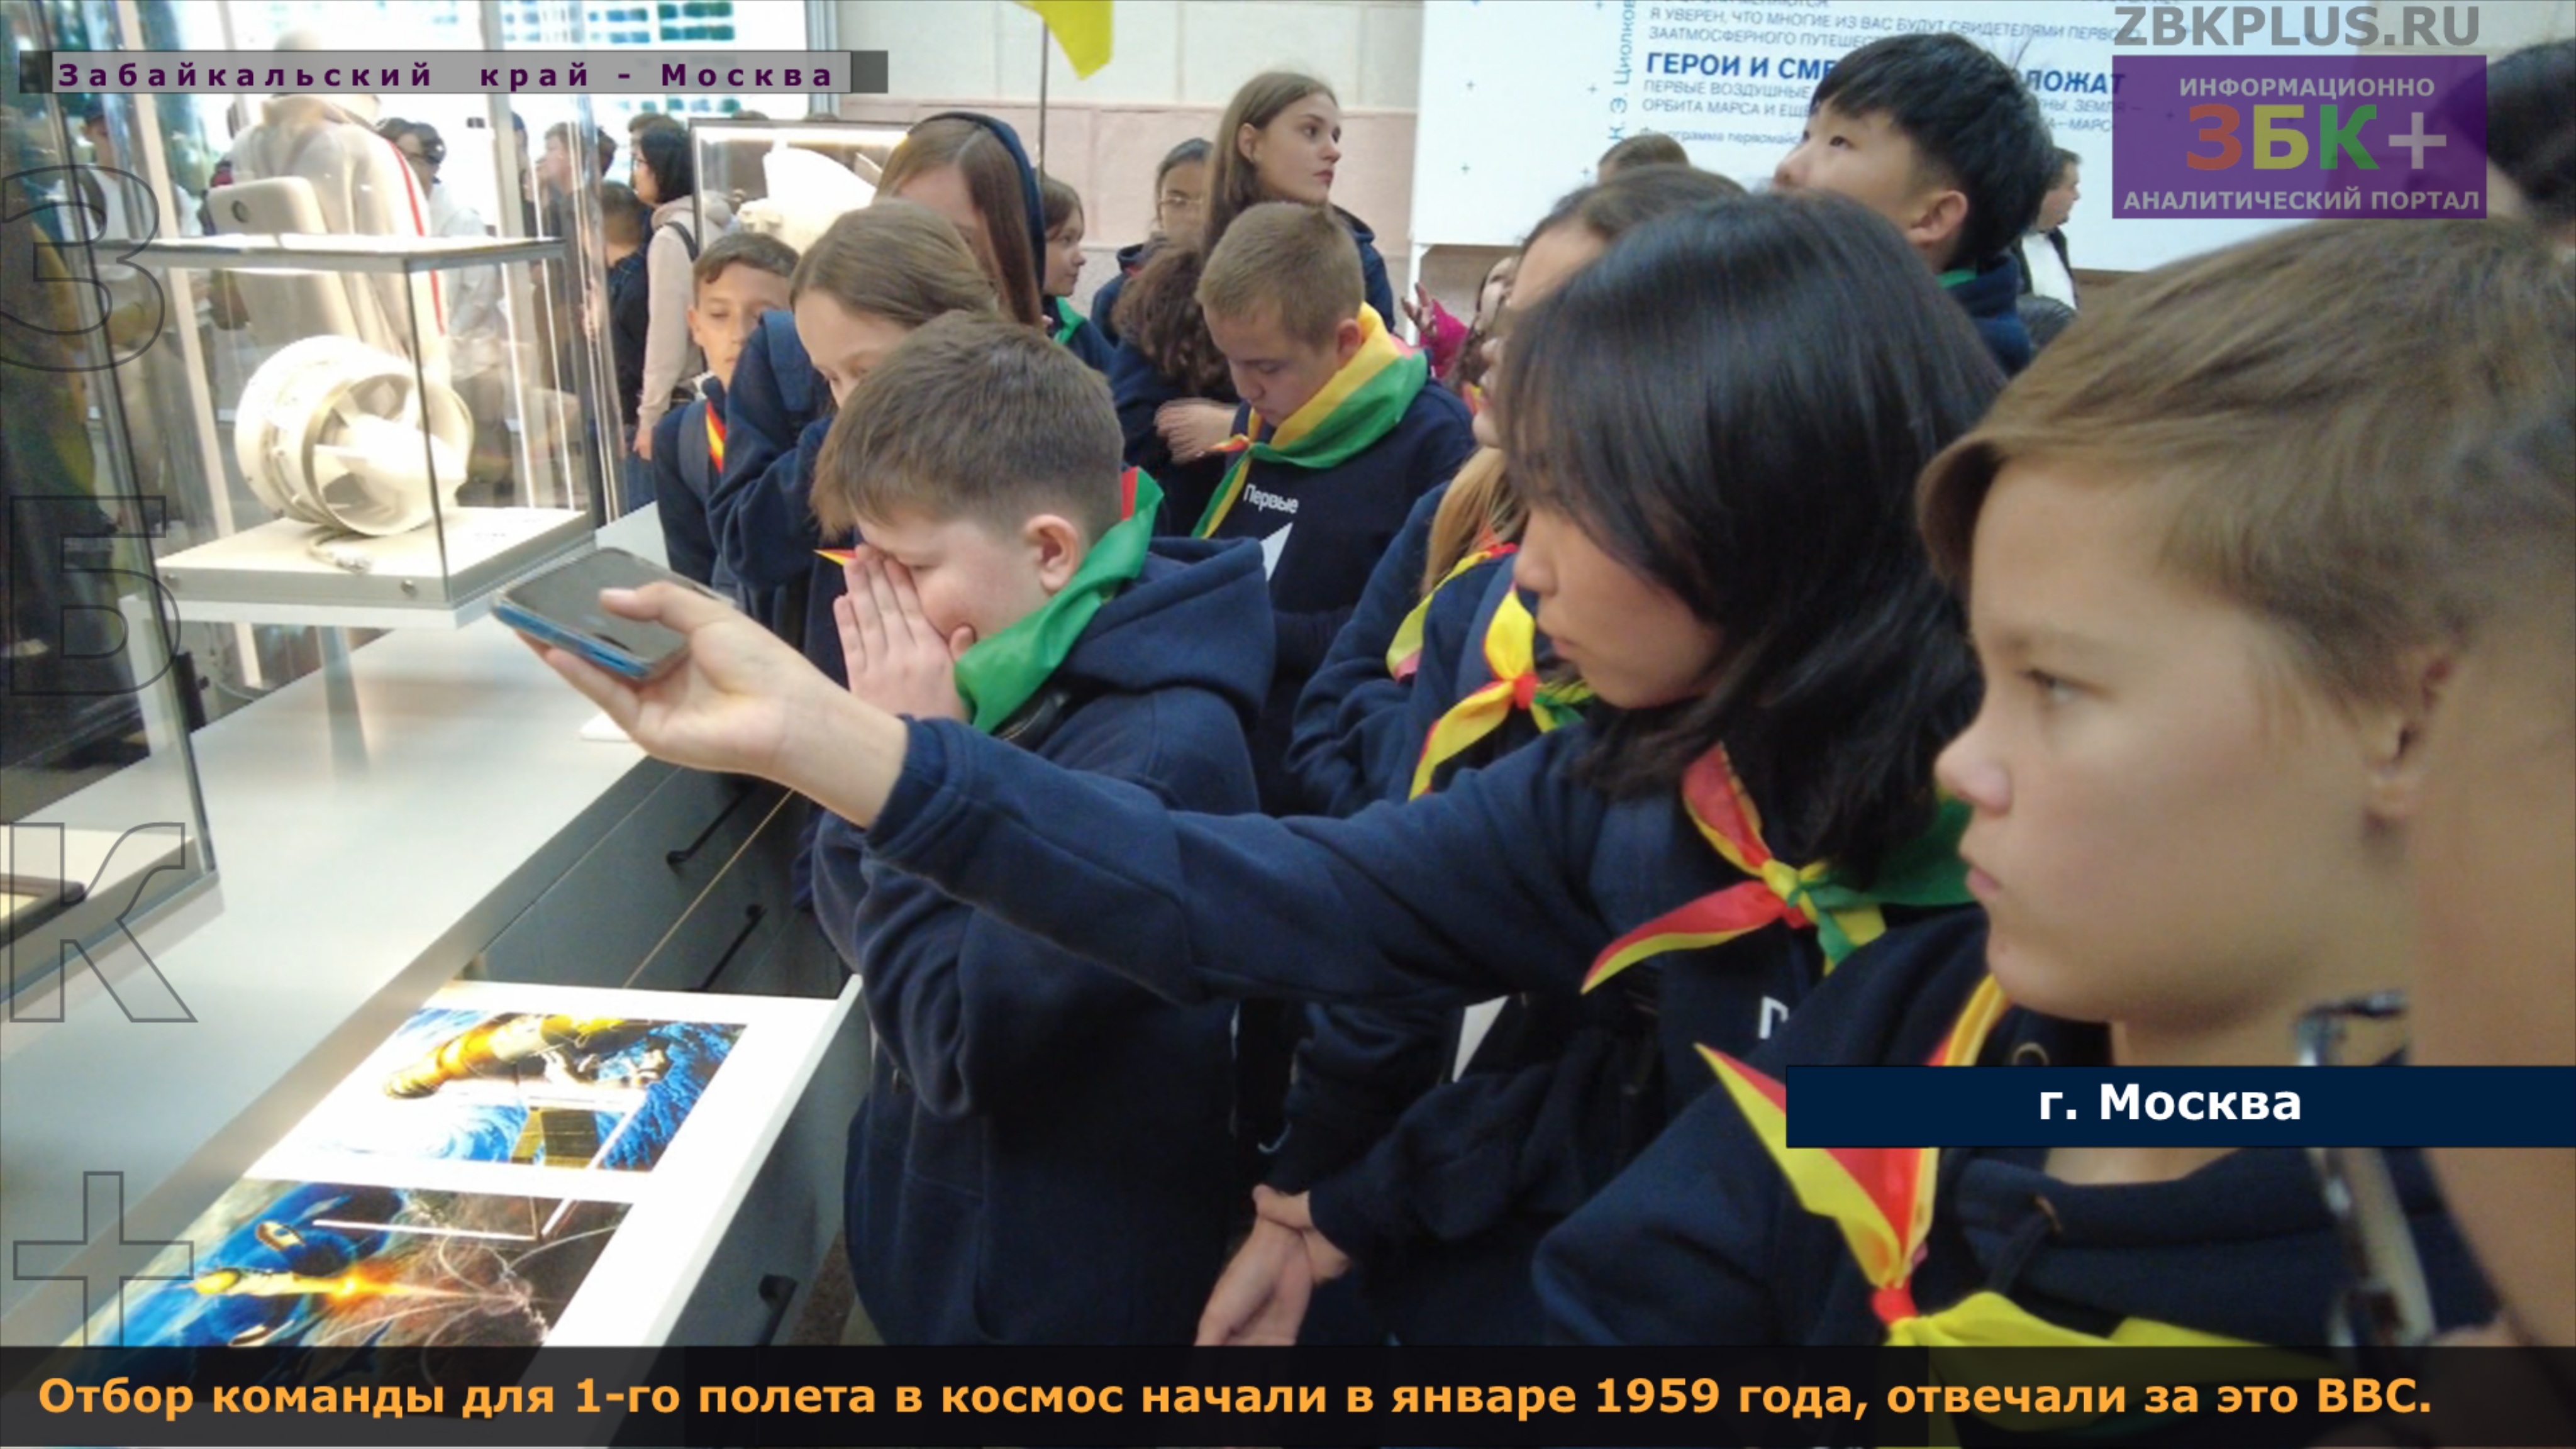 6 + Дети из Забайкальского края посетили космический павильон на ВДНХ